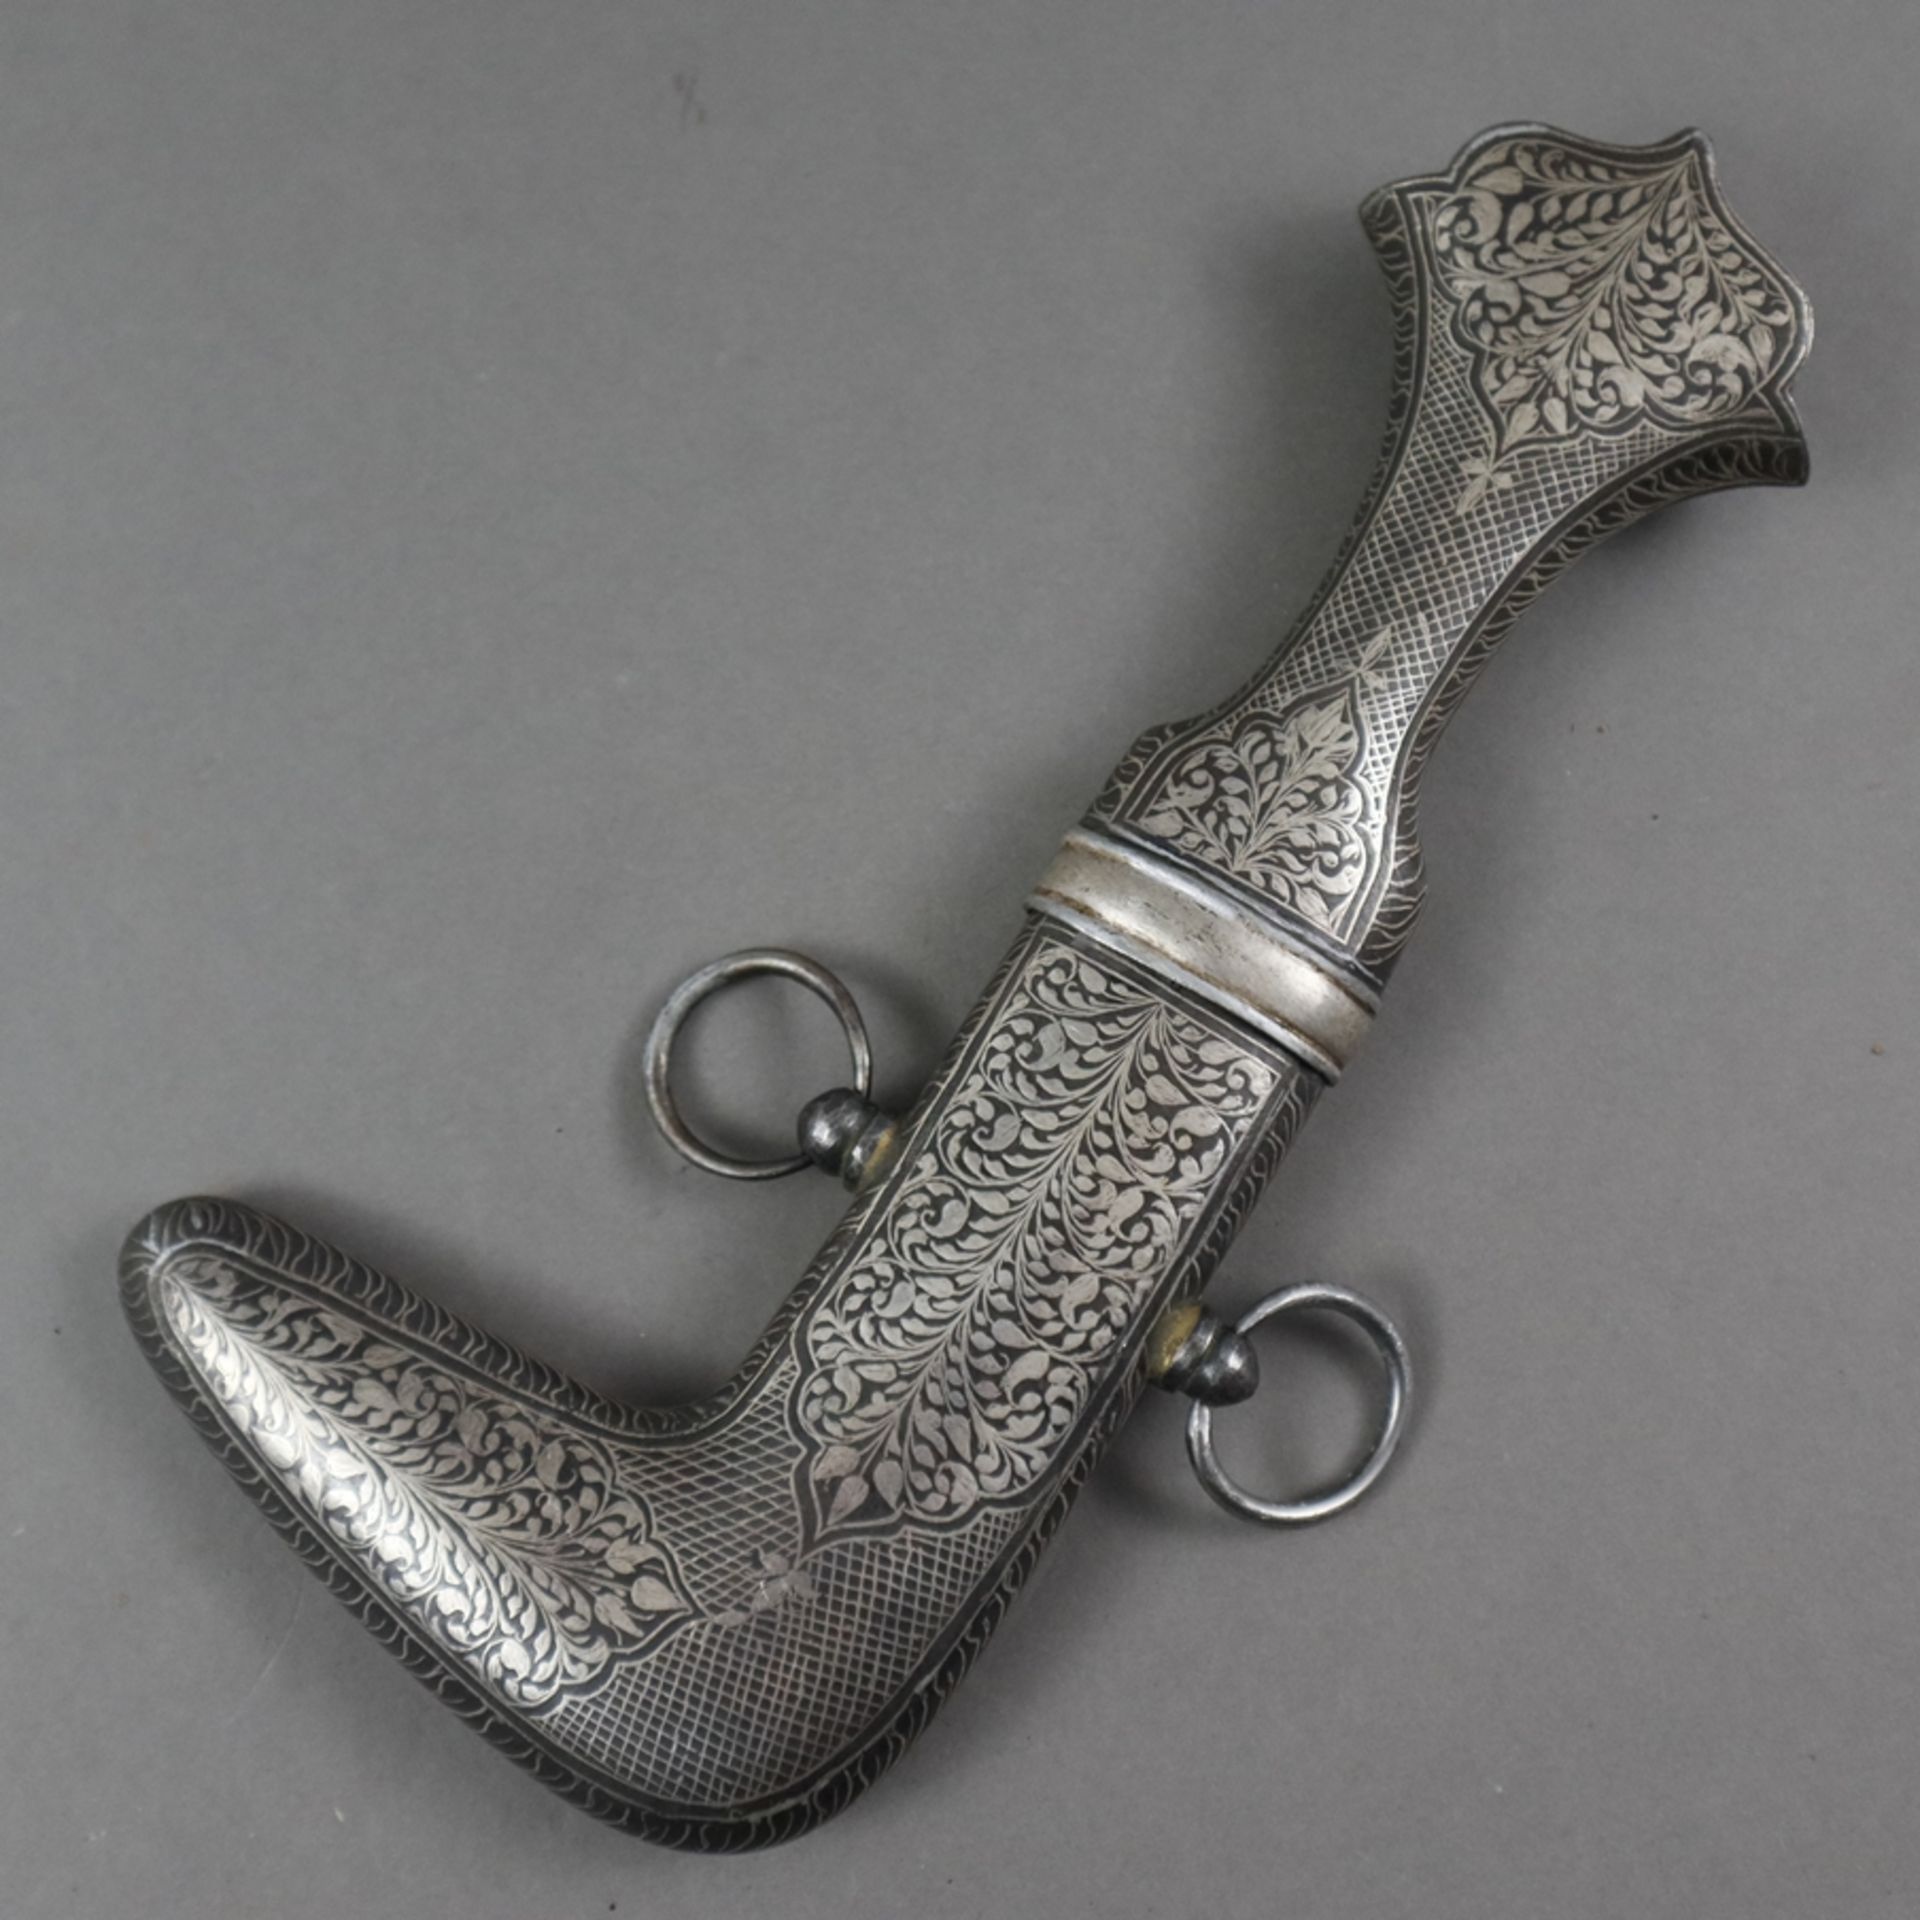 Silbertauschierter Eisen-Khanjar /-Jambyia - Indien 19./20.Jh., geschwungene zweischneidige Klinge - Image 6 of 6